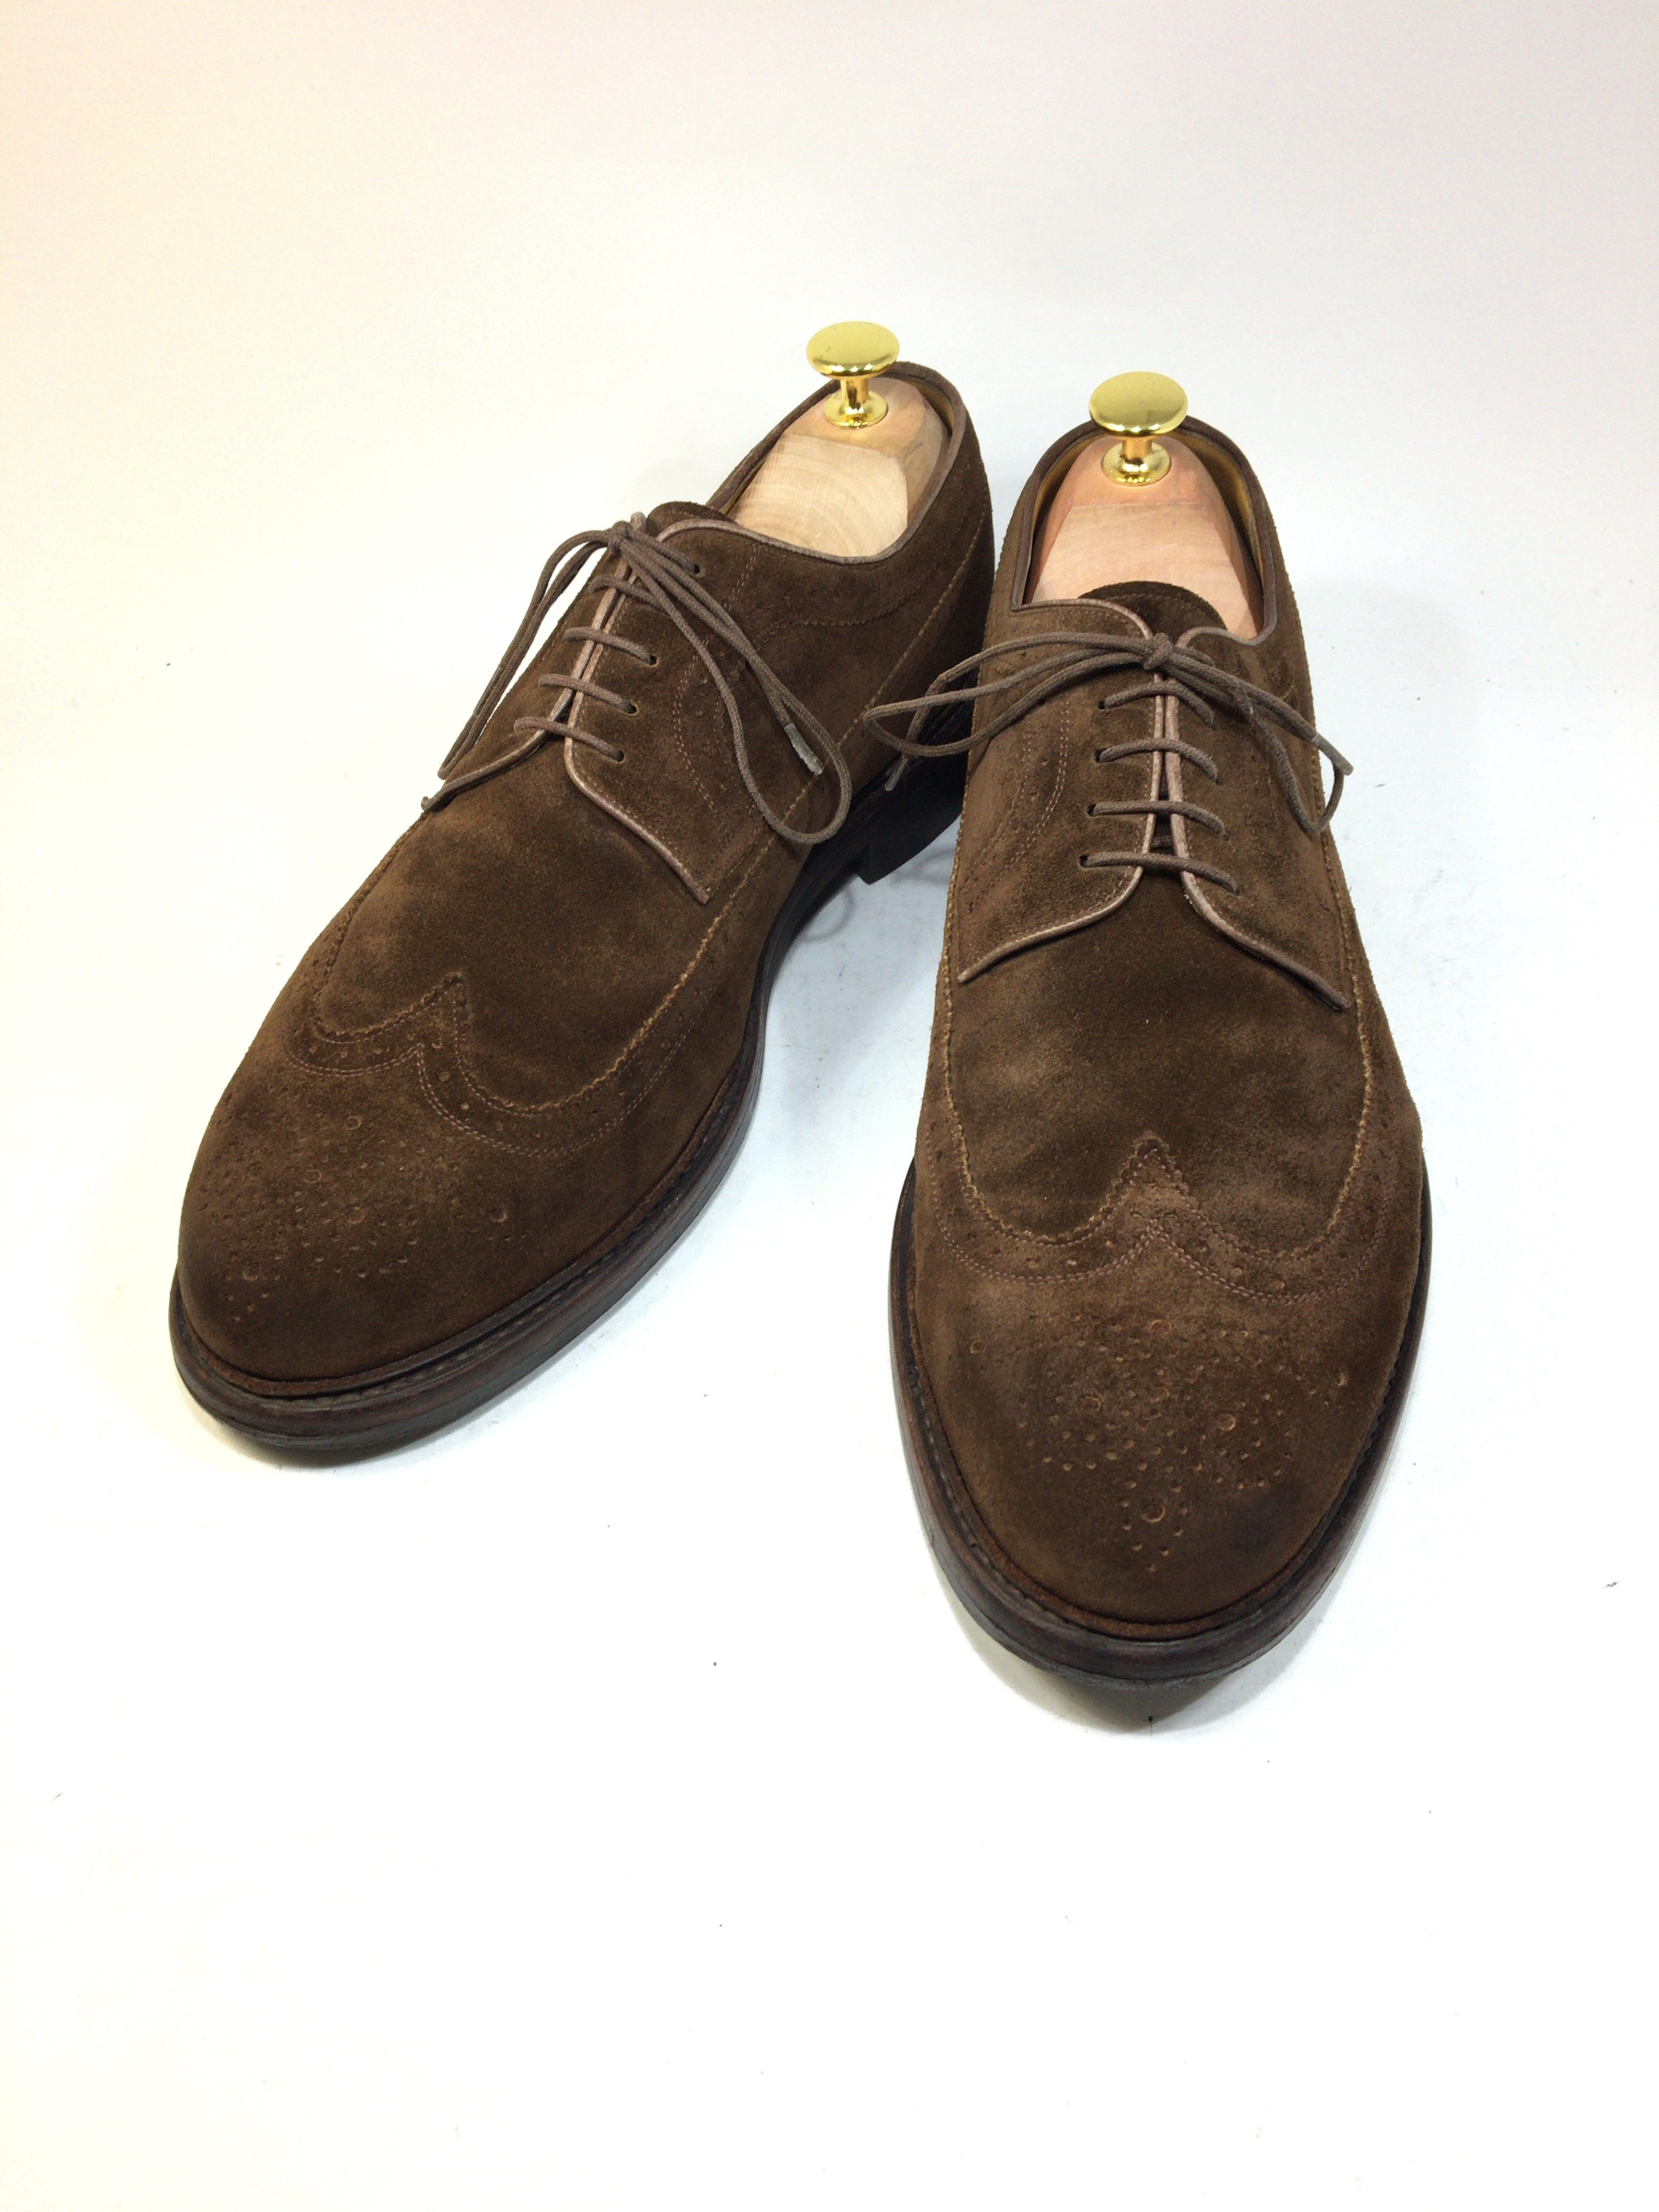 ヤンコ Yanko スエード フルブローグ 27 5cm 中古靴 革靴 ブーツ通販専門店 Dafsmart ダフスマート Online Shop